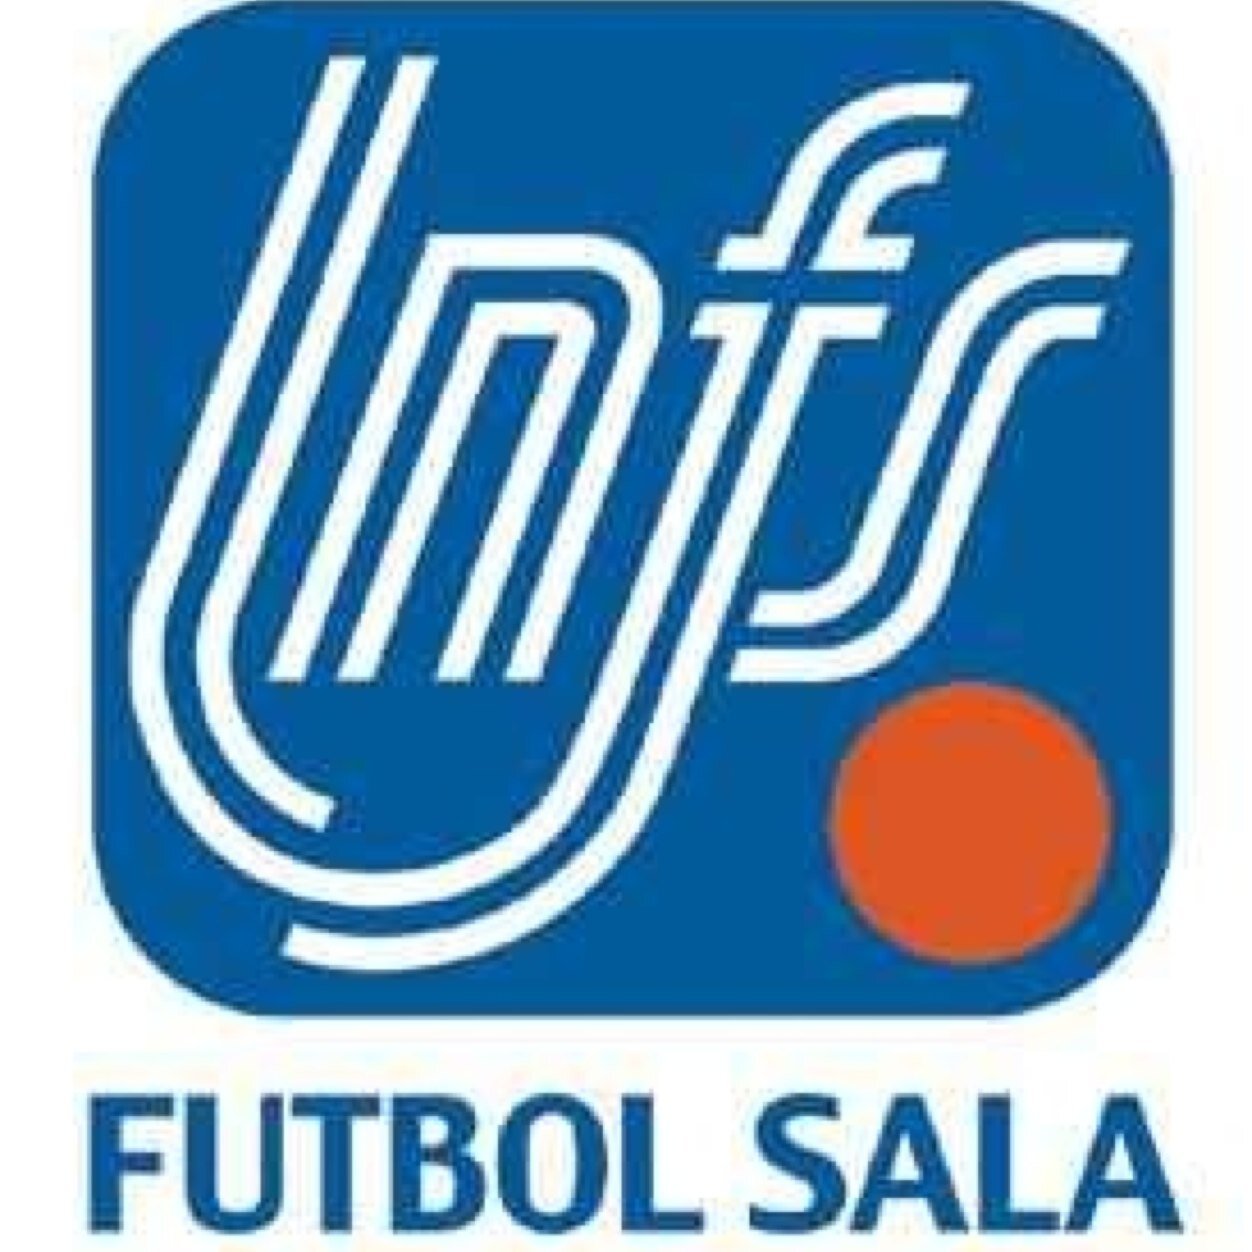 Twitter oficial Noticias Fútbol Sala Mas/Fem. 1ªNacional 2ªNacional ,Regional ,futbol11 y amateur,resto ligas,Clubes,categorias inferiores,notificaciones.